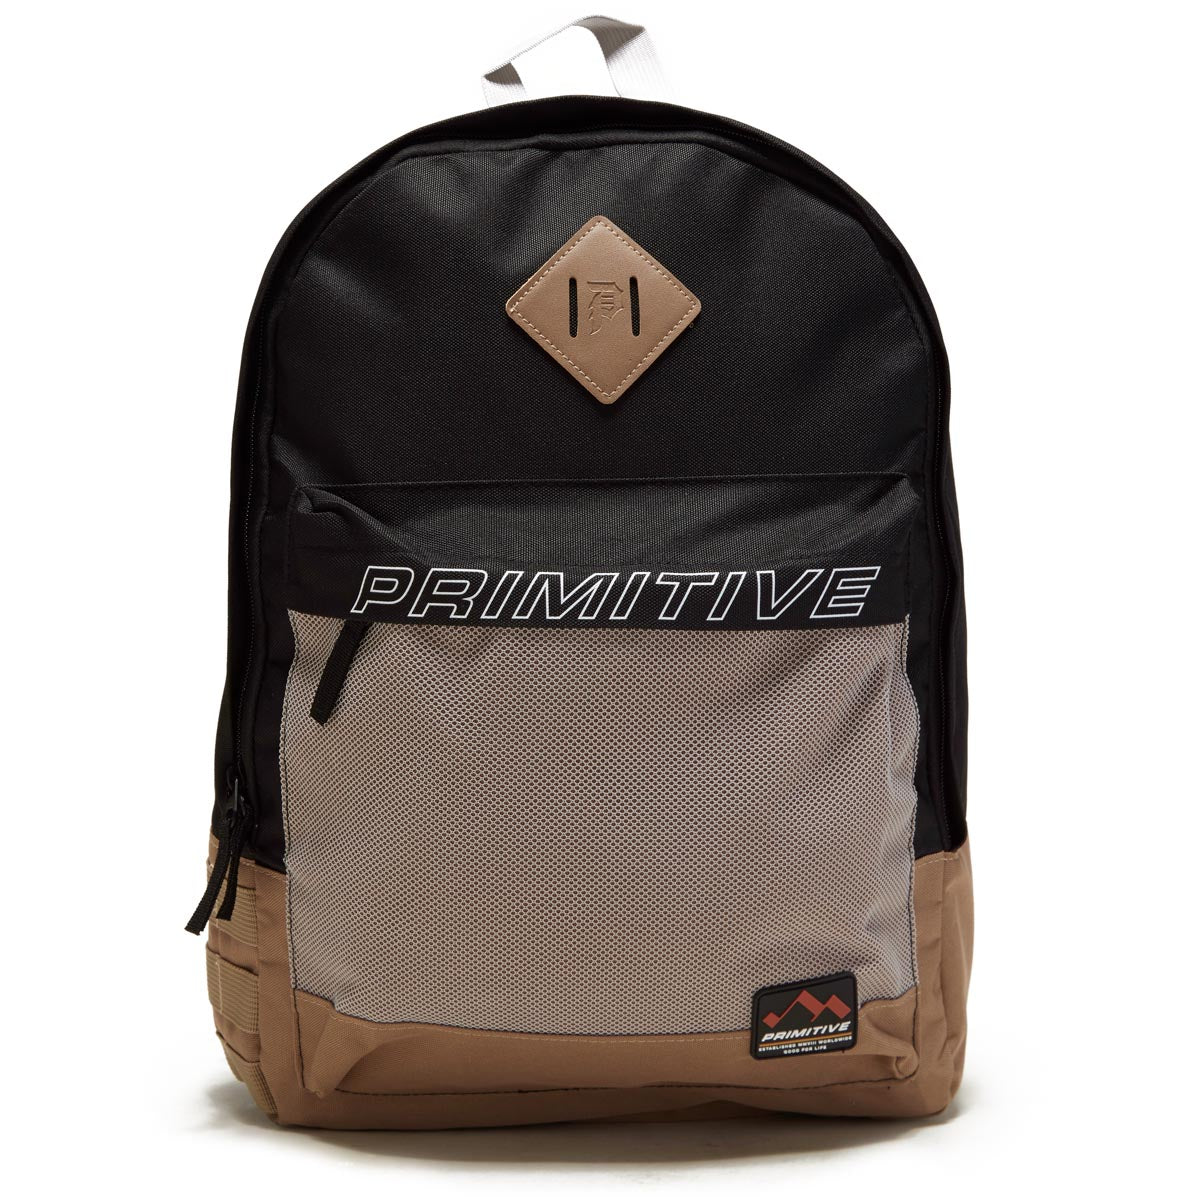 Primitive Summit Backpack - Black image 1